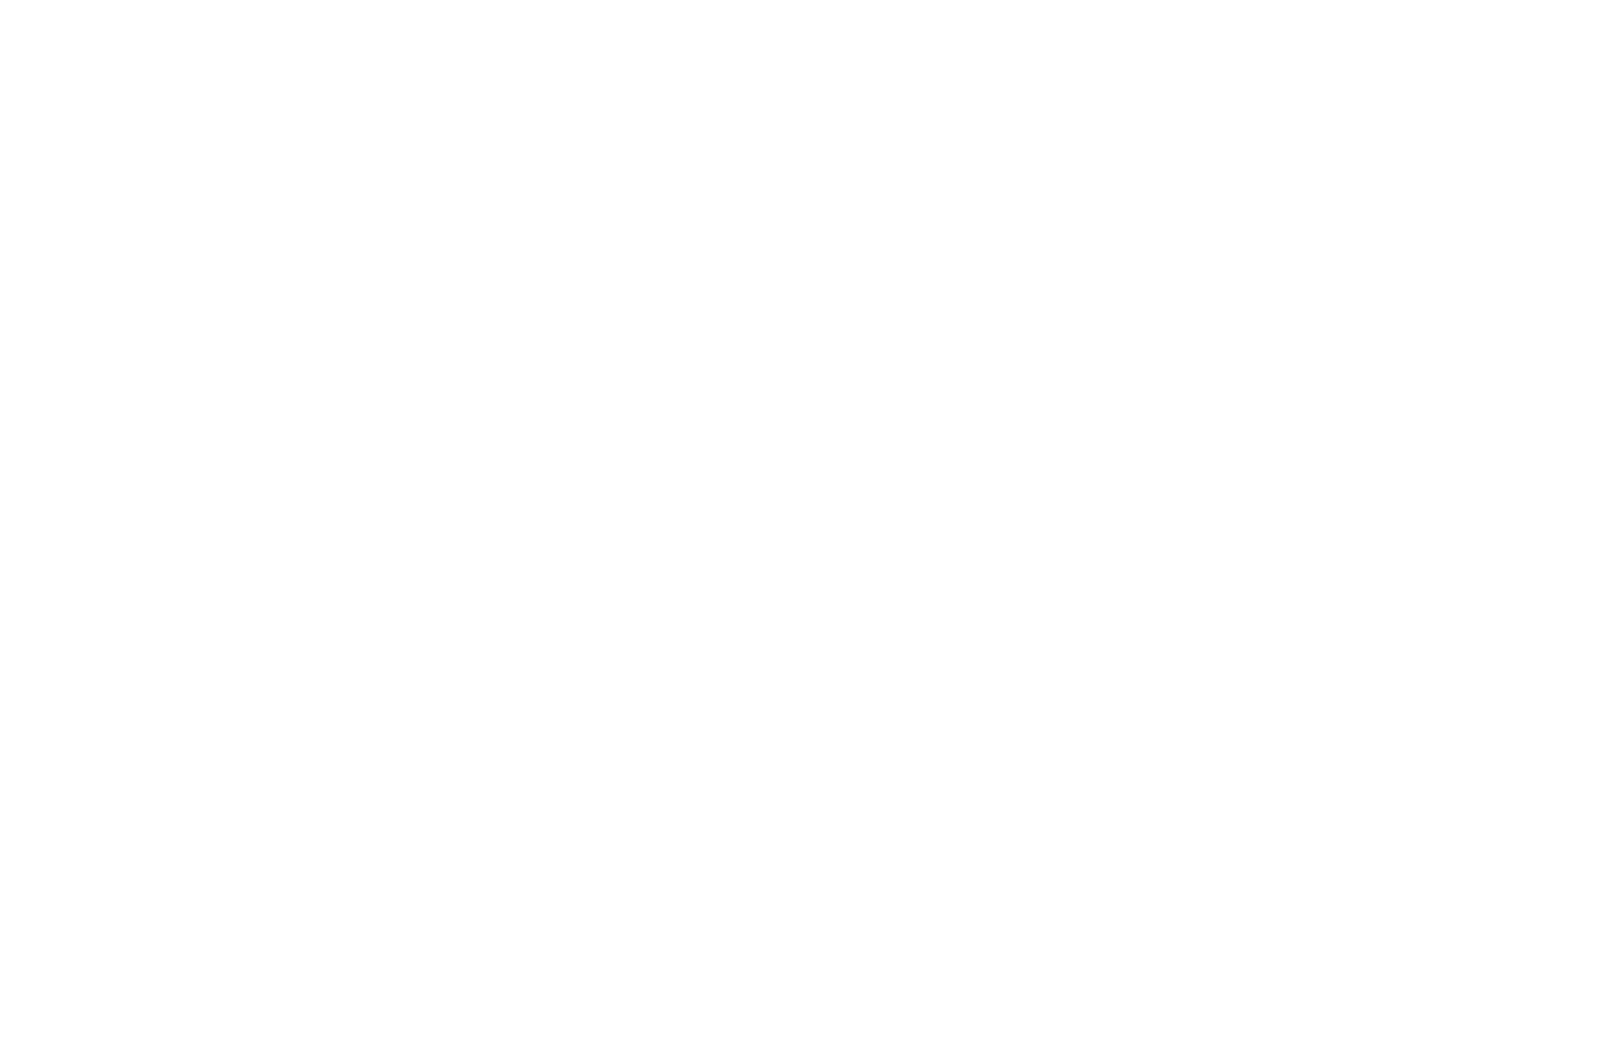 OFFICIALSELECTION-ZeroDegreeFilmContest-1stSeason2020 (1).png